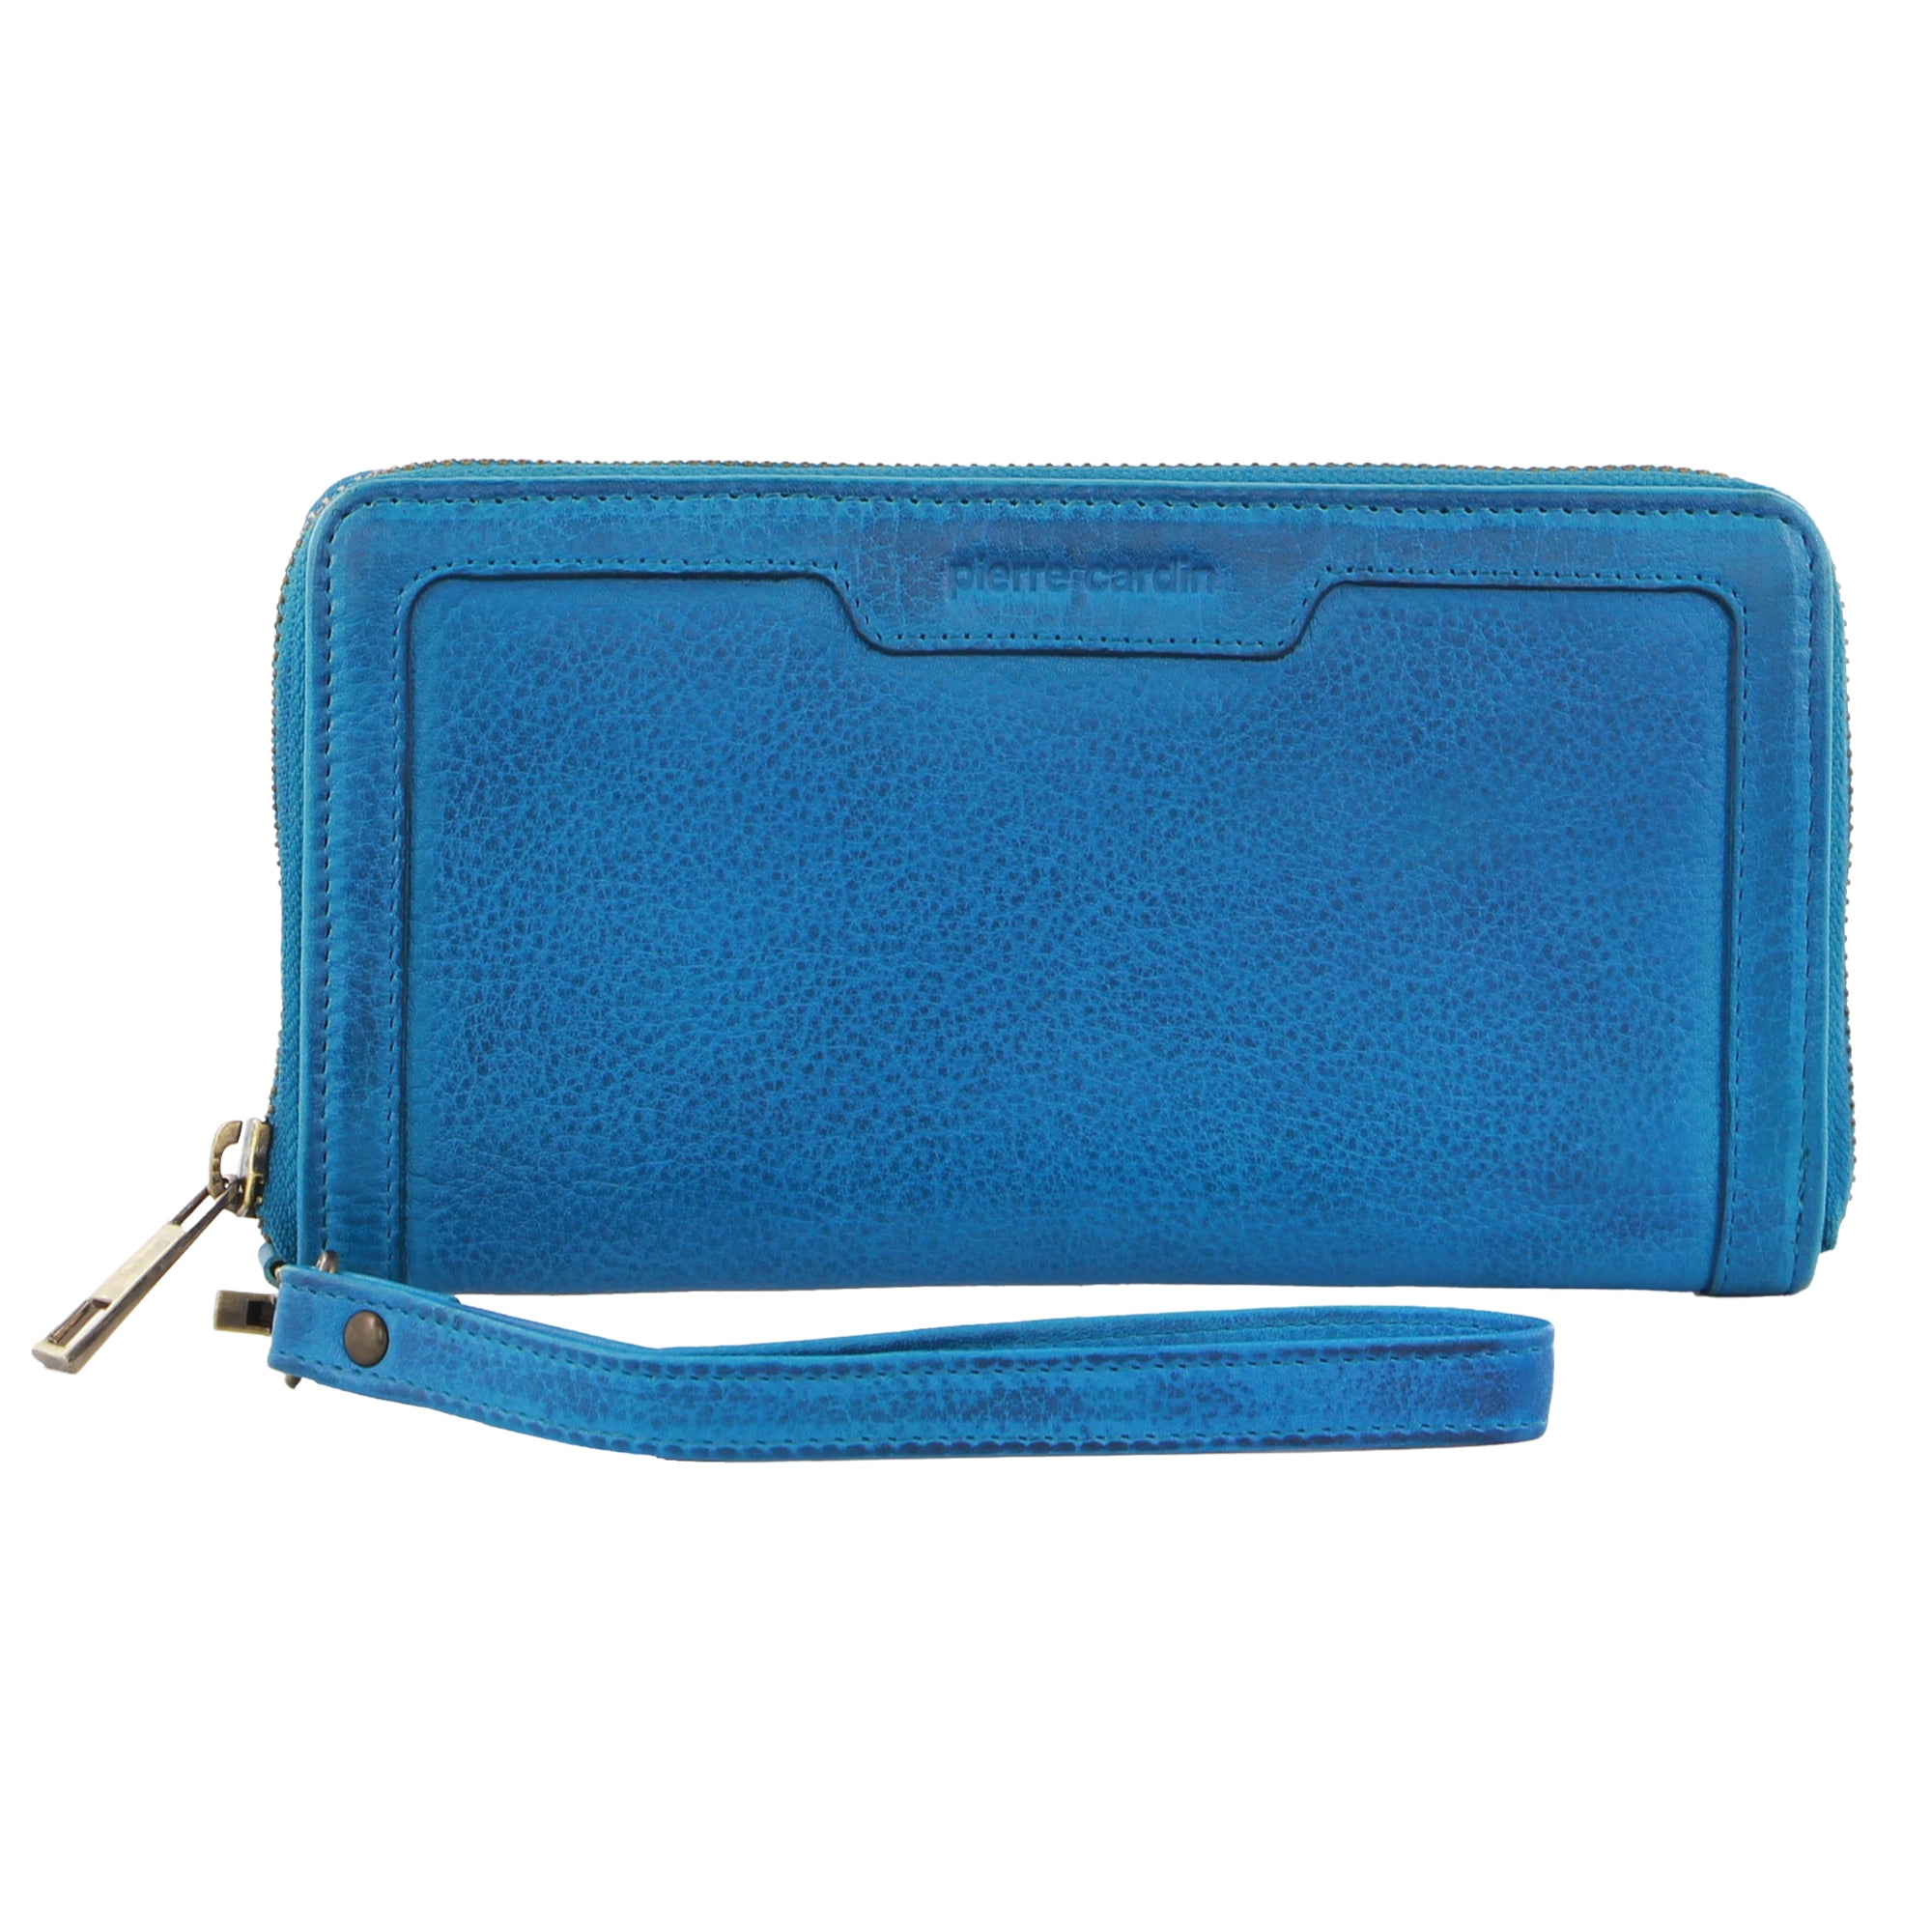 Pierre Cardin Women's Leather Zip Around Wallet w/ Wristlet in Aqua